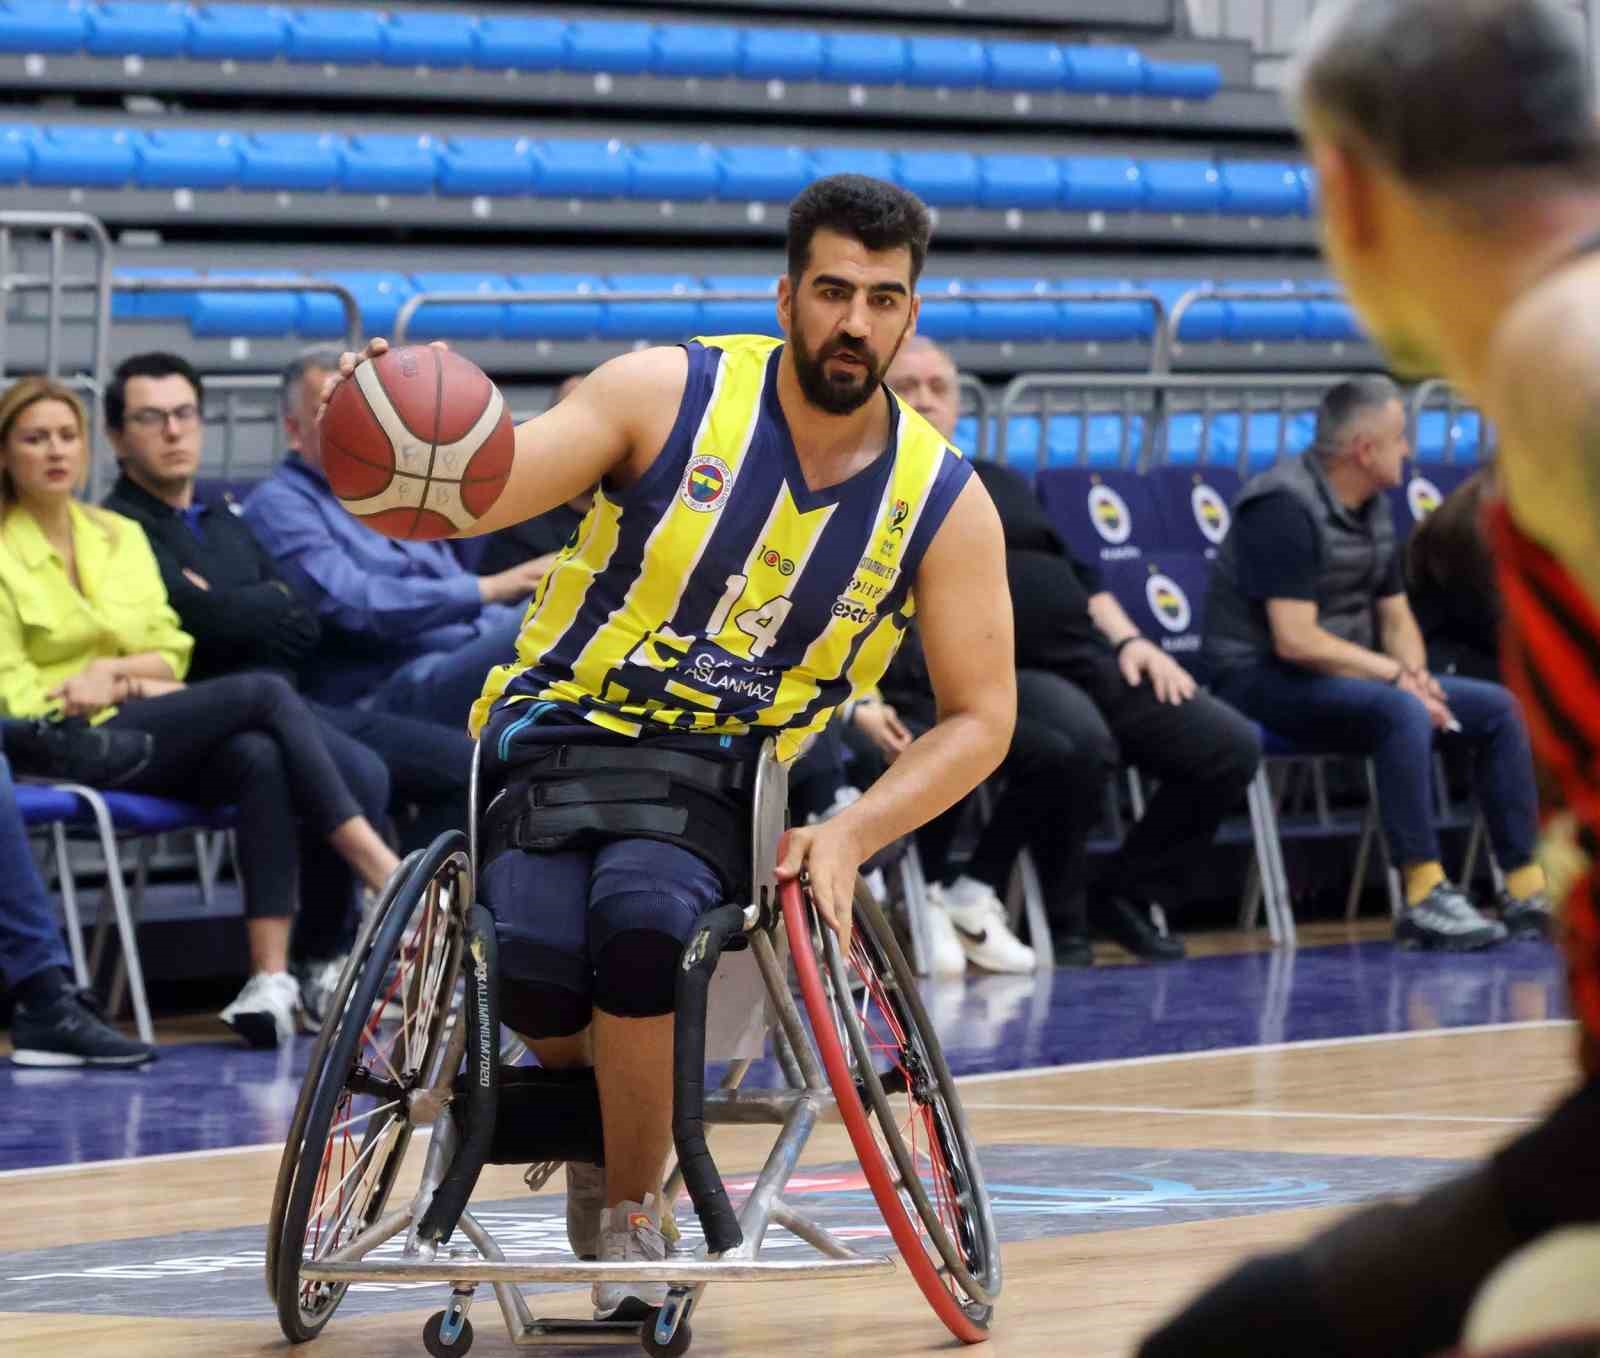 avrupa sampiyonu fenerbahce tekerlekli sandalye basketbol takimi ligde finale yukseldi 1 rC6vm1OX